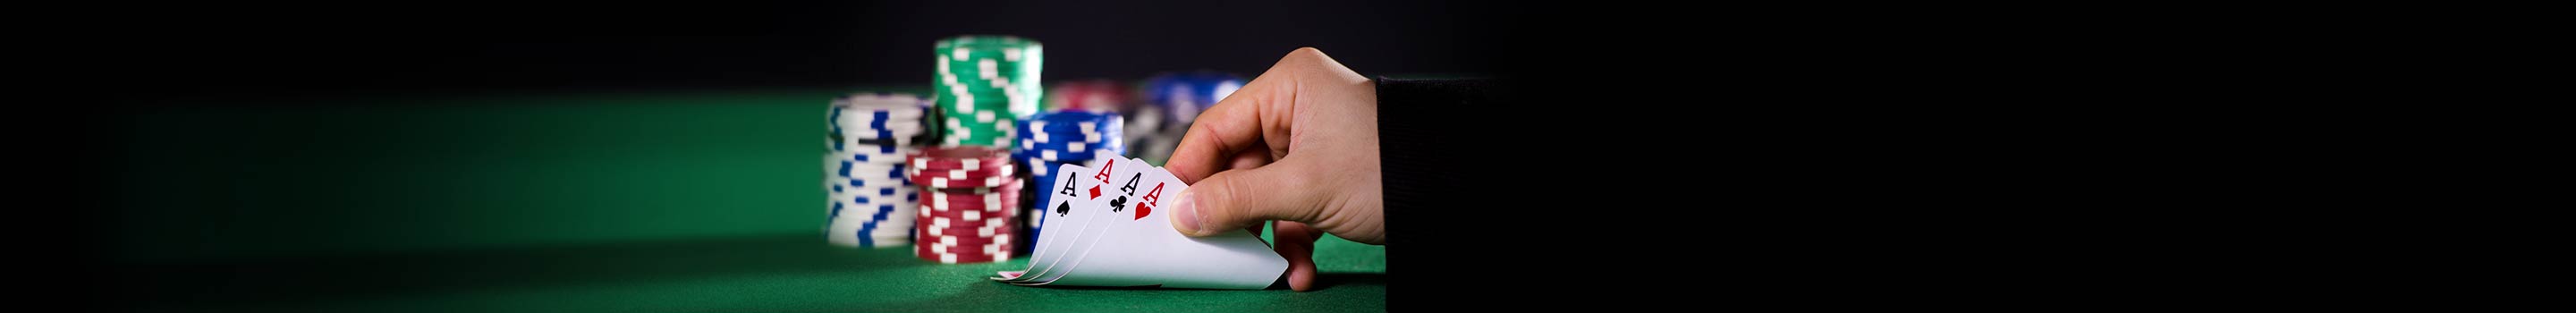 Nejčastější chyby při pokeru